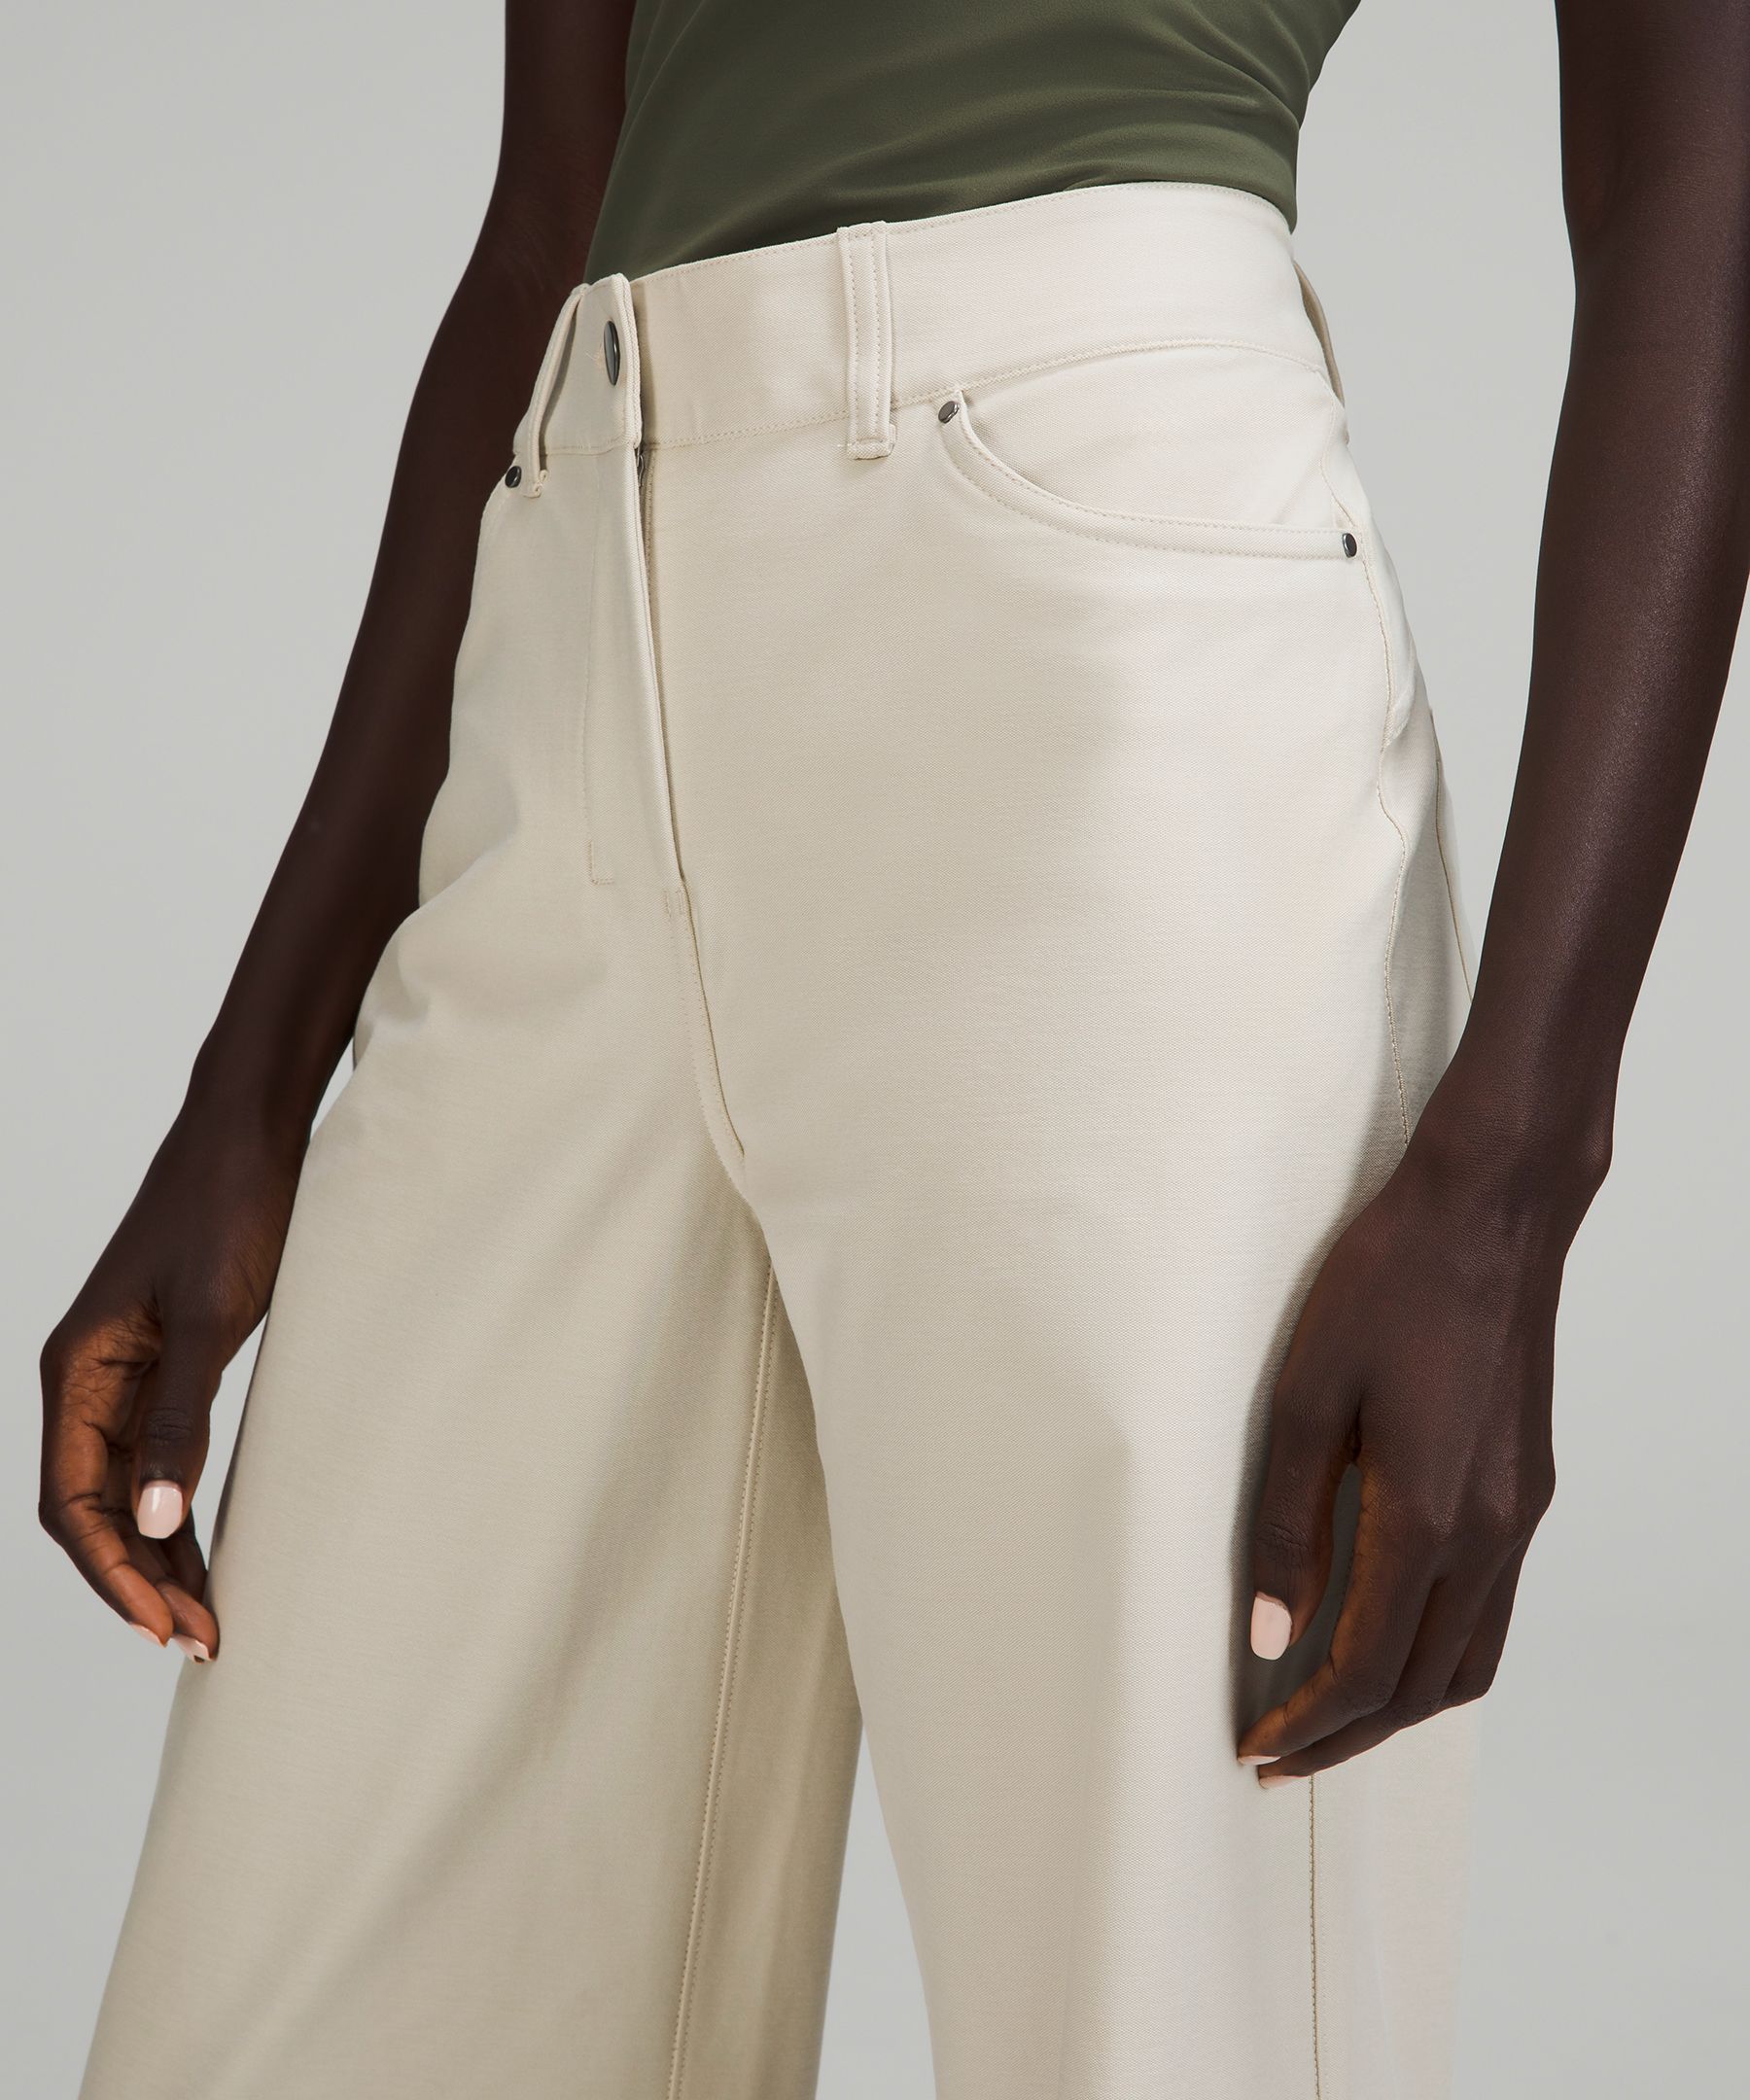 City Sleek 5 Pocket High-Rise Wide-Leg Pant Full Length *Light